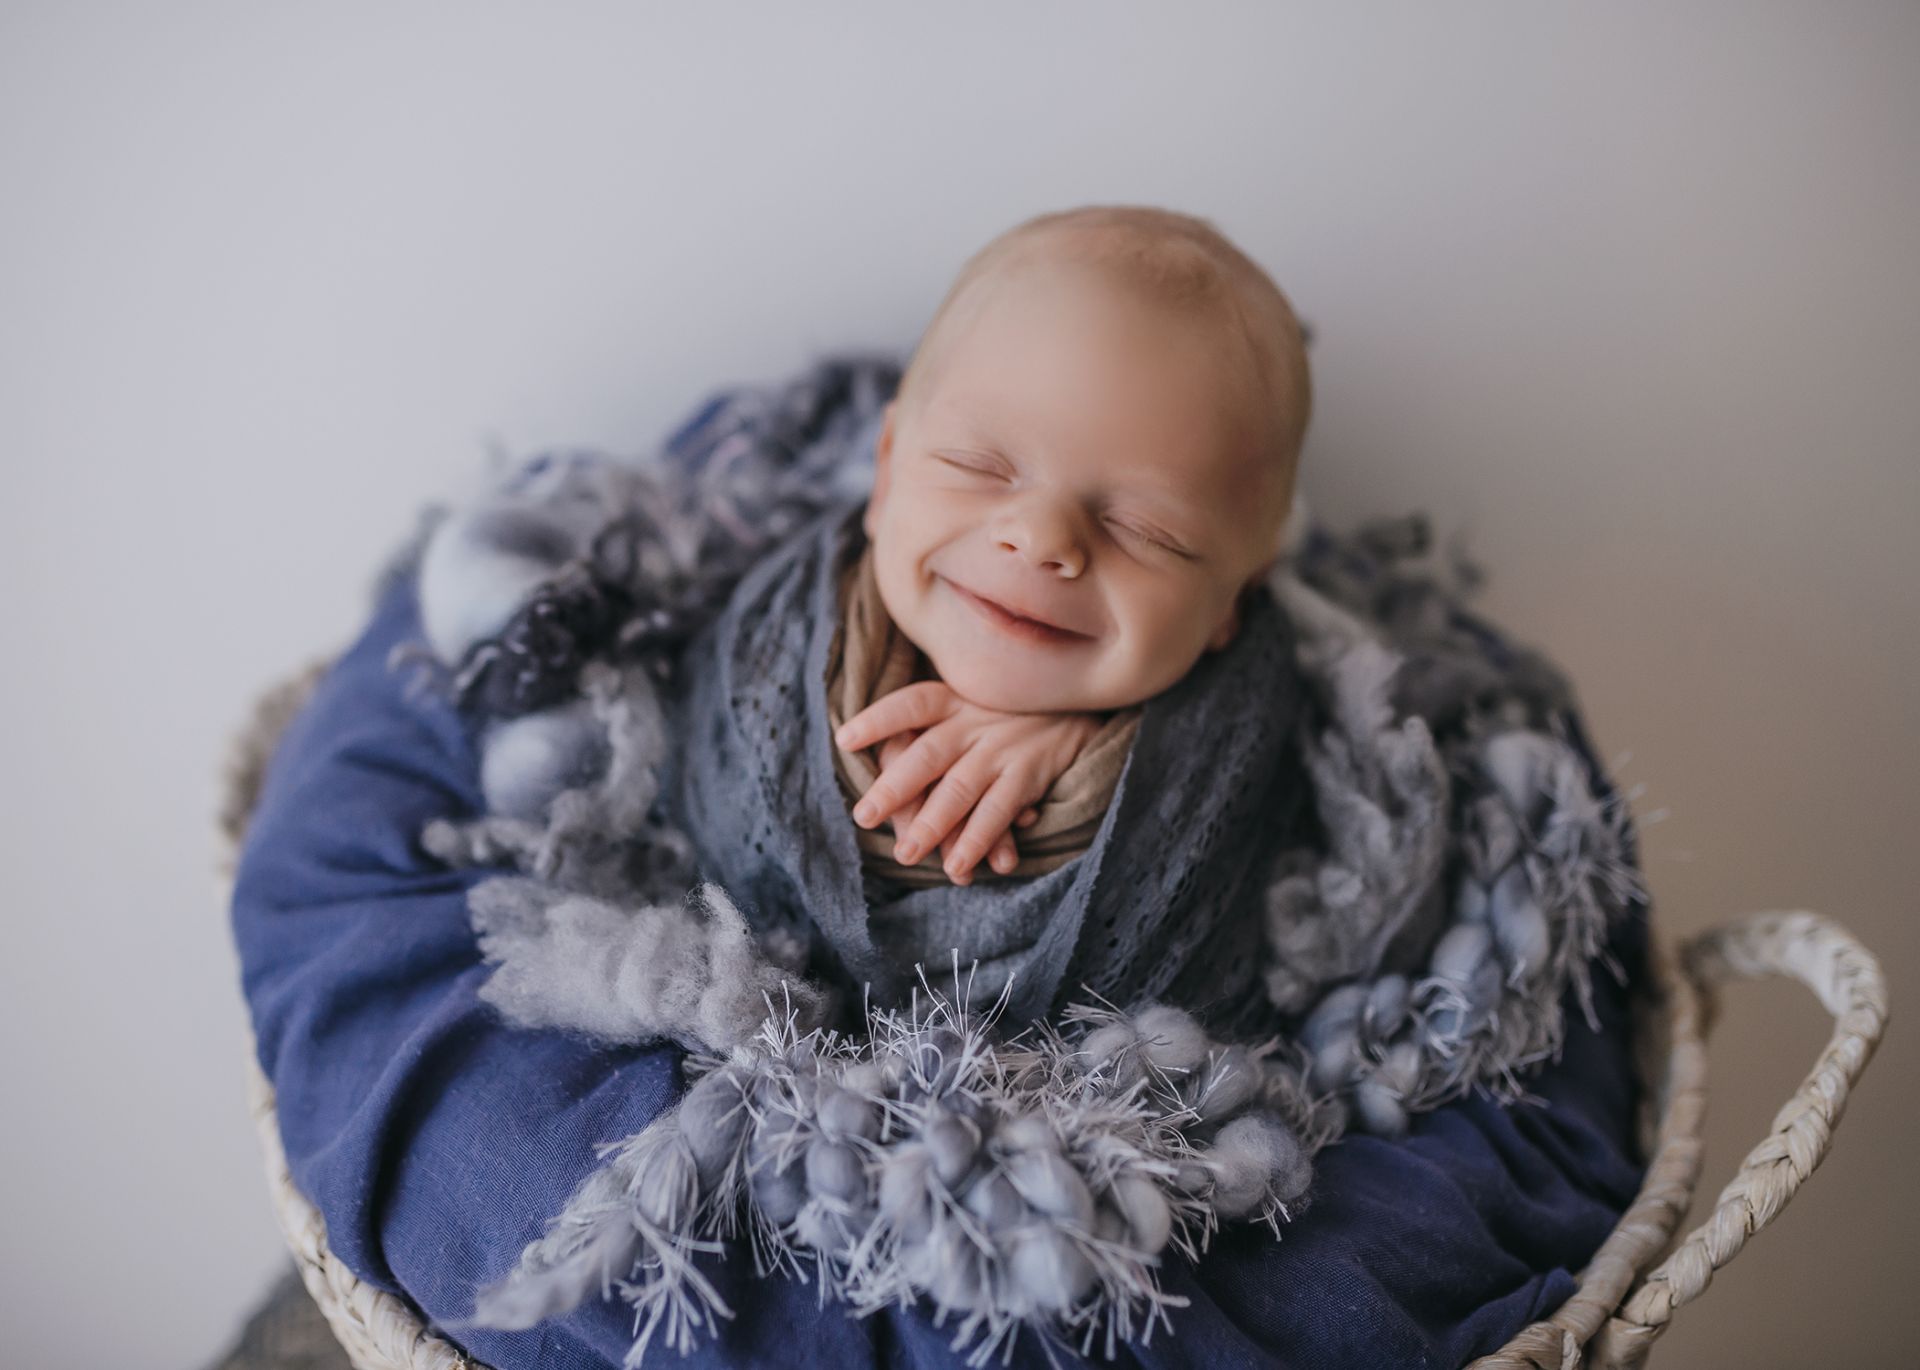 Neugeborenenfotografie-Schwangerschaftsfotografie-9month-Babyfotos-Babyshooting-Newbornfotos-Babybauchfotos-Fotografie-Katharina-Müller-www.fotografie-km.de